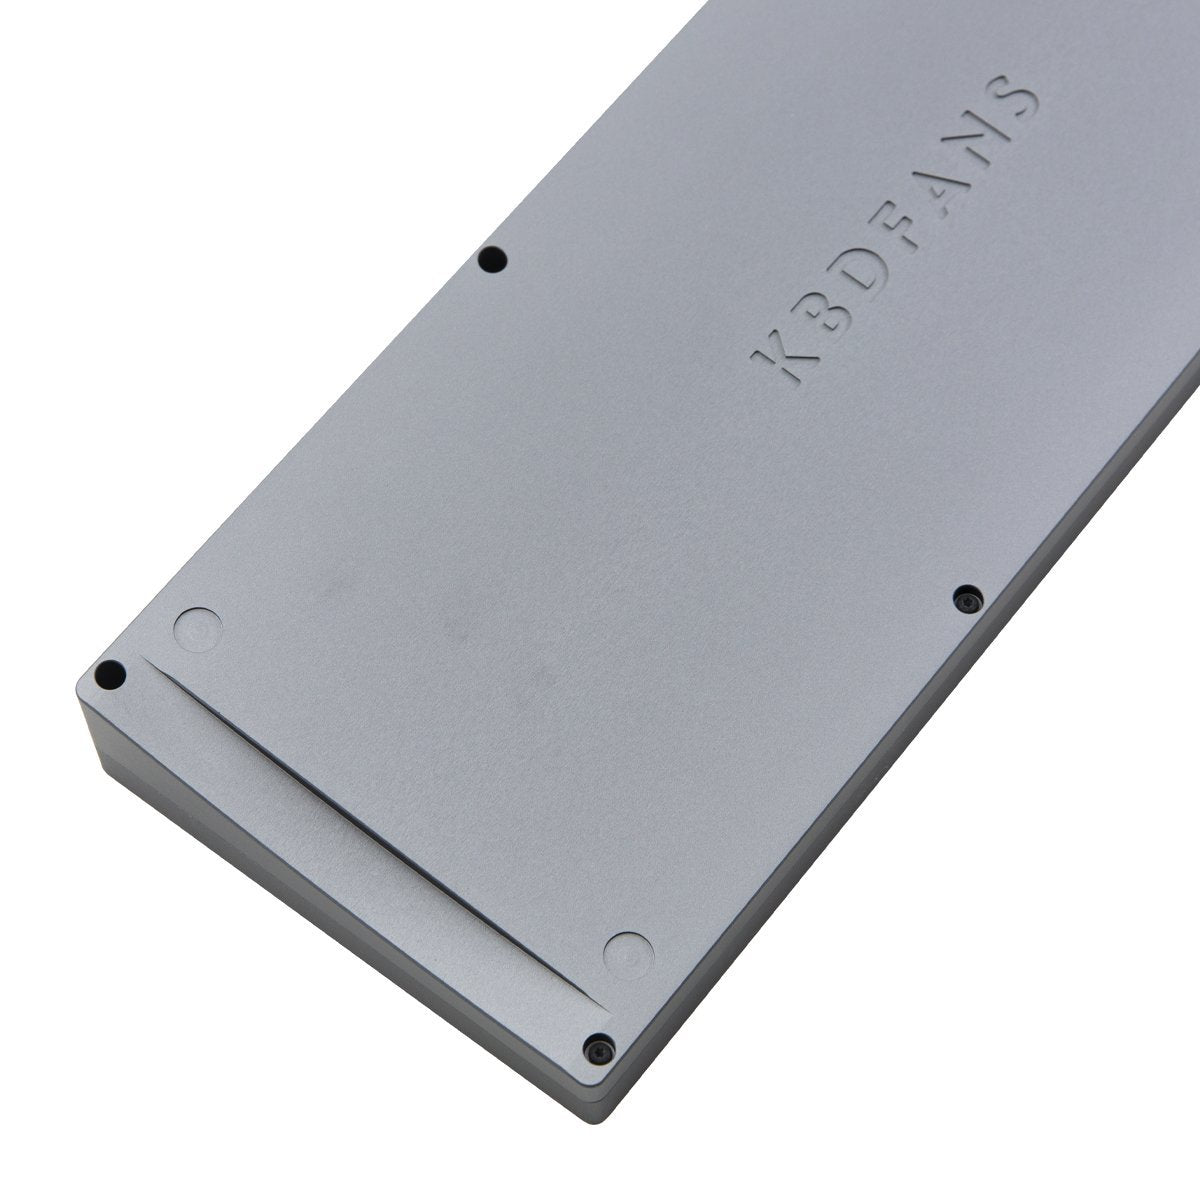 KBDfans KBD67 V3 Gasket Mount Aluminum Case - Divinikey